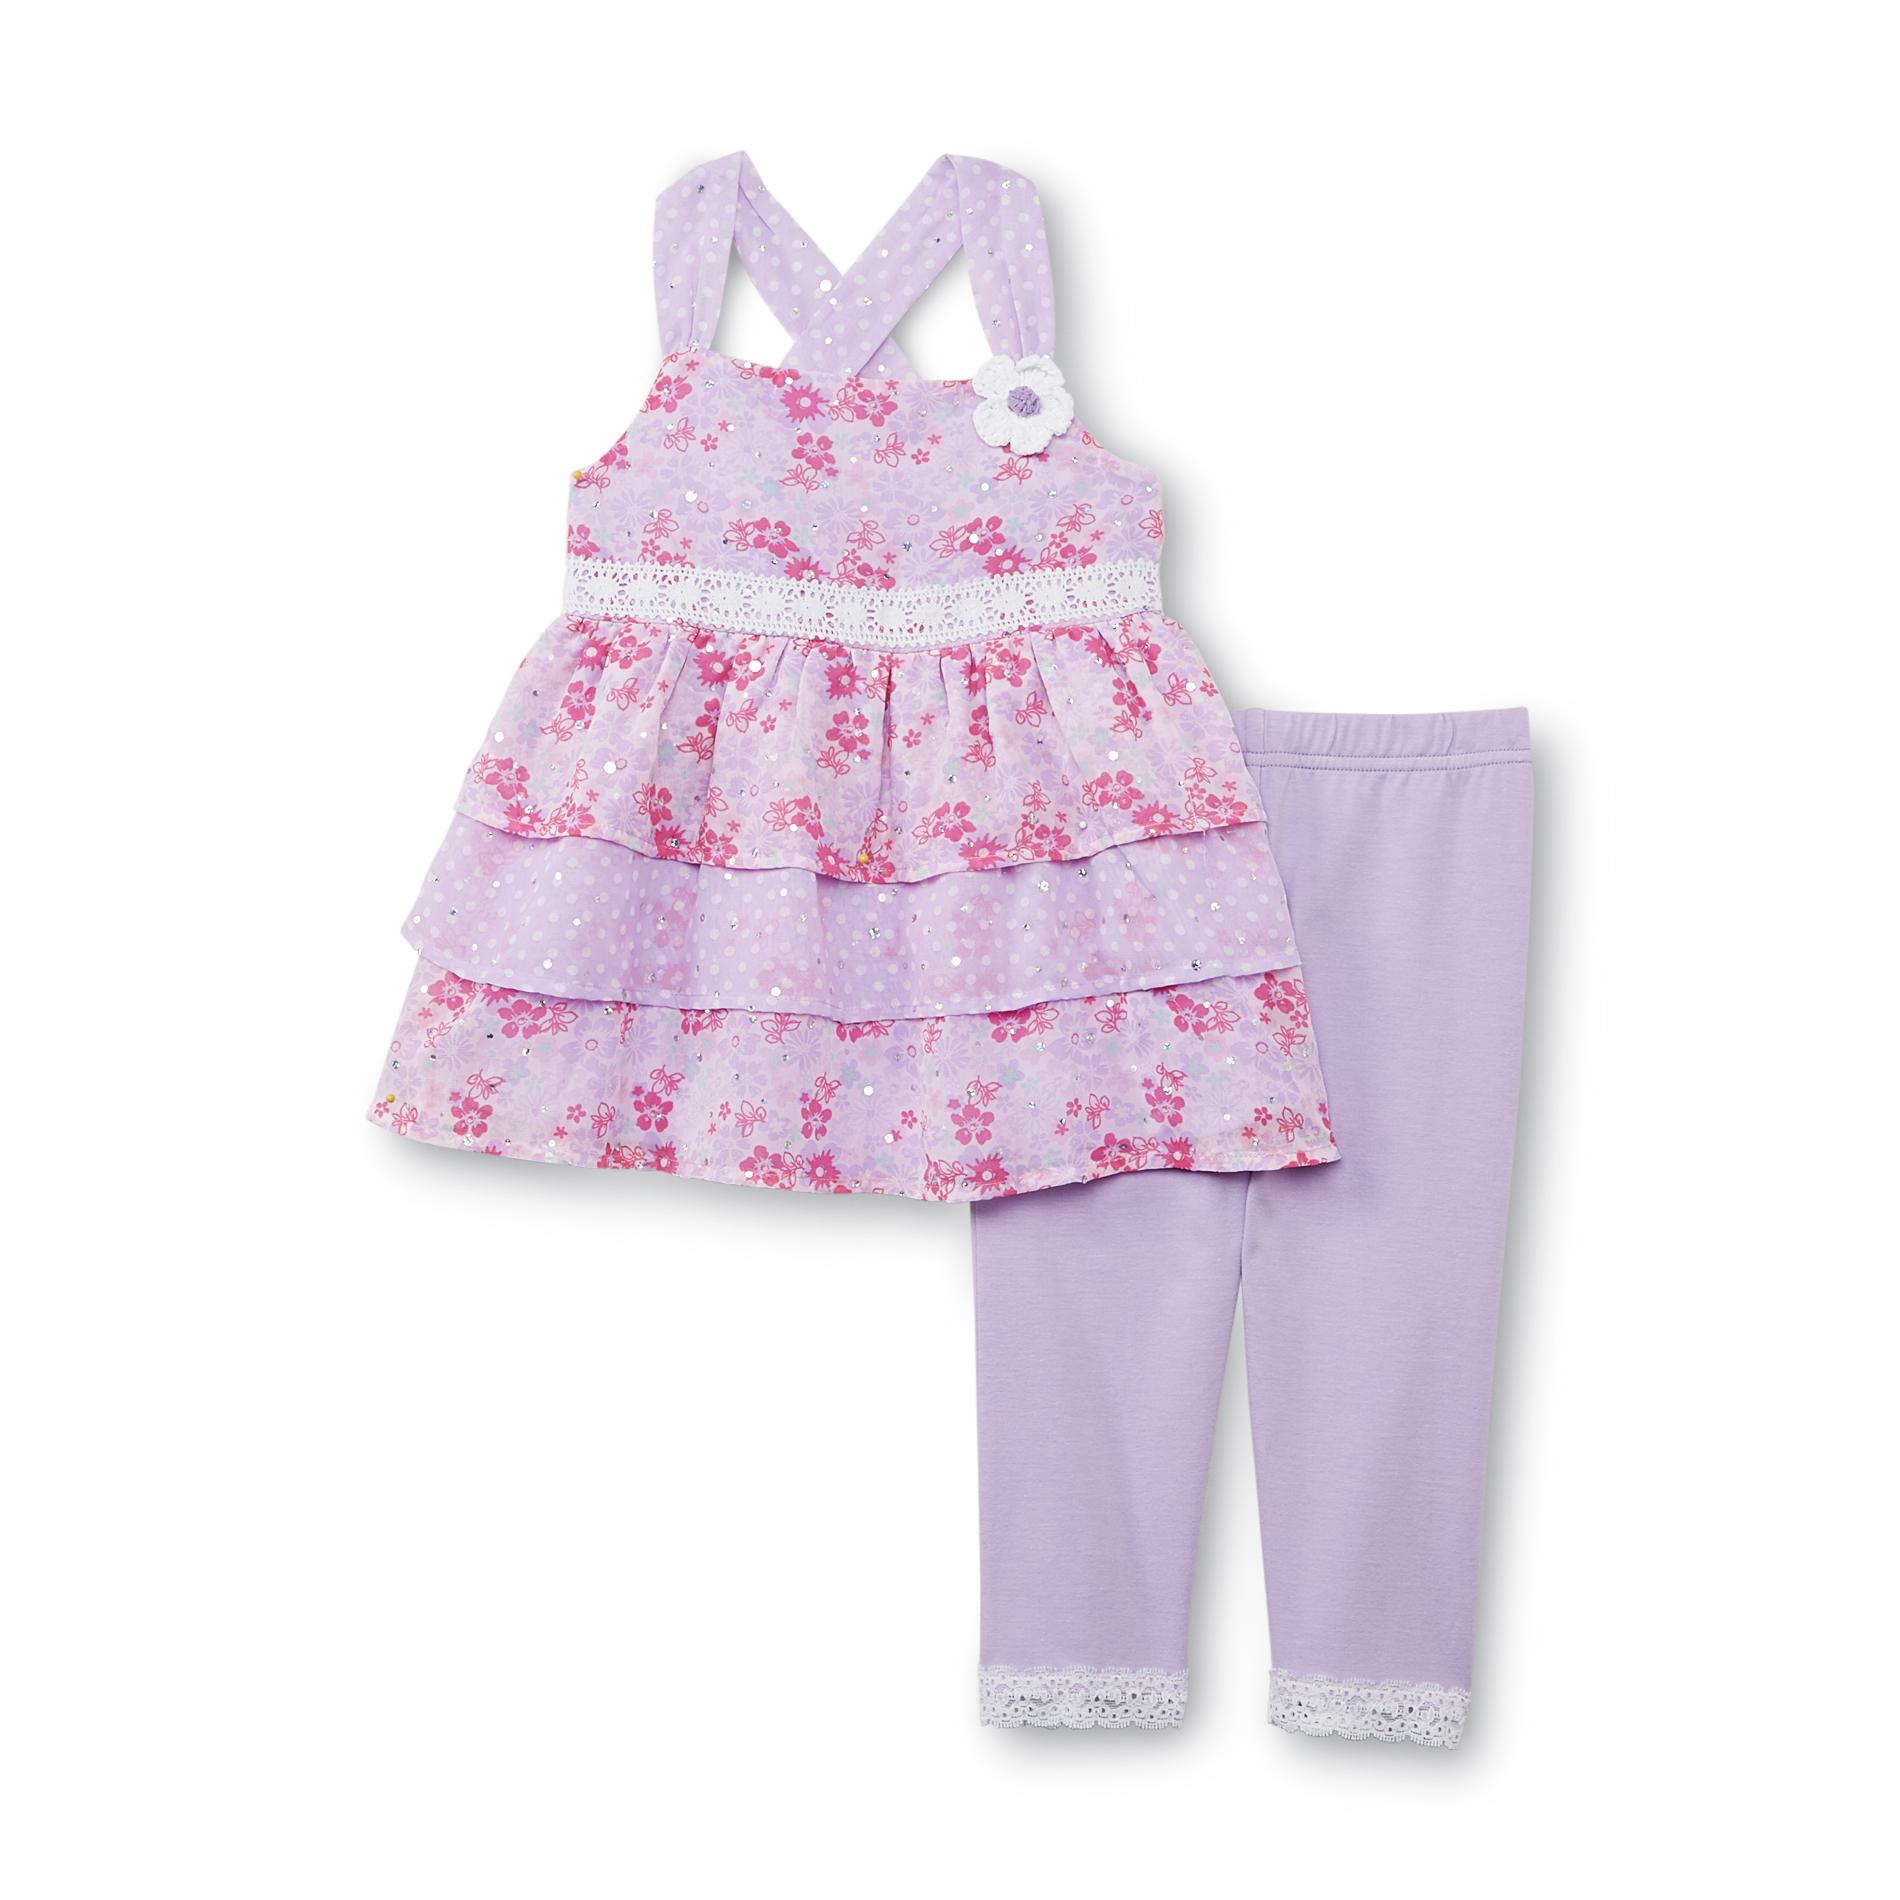 WonderKids Infant & Toddler Girl's Top & Leggings - Floral & Polka Dot